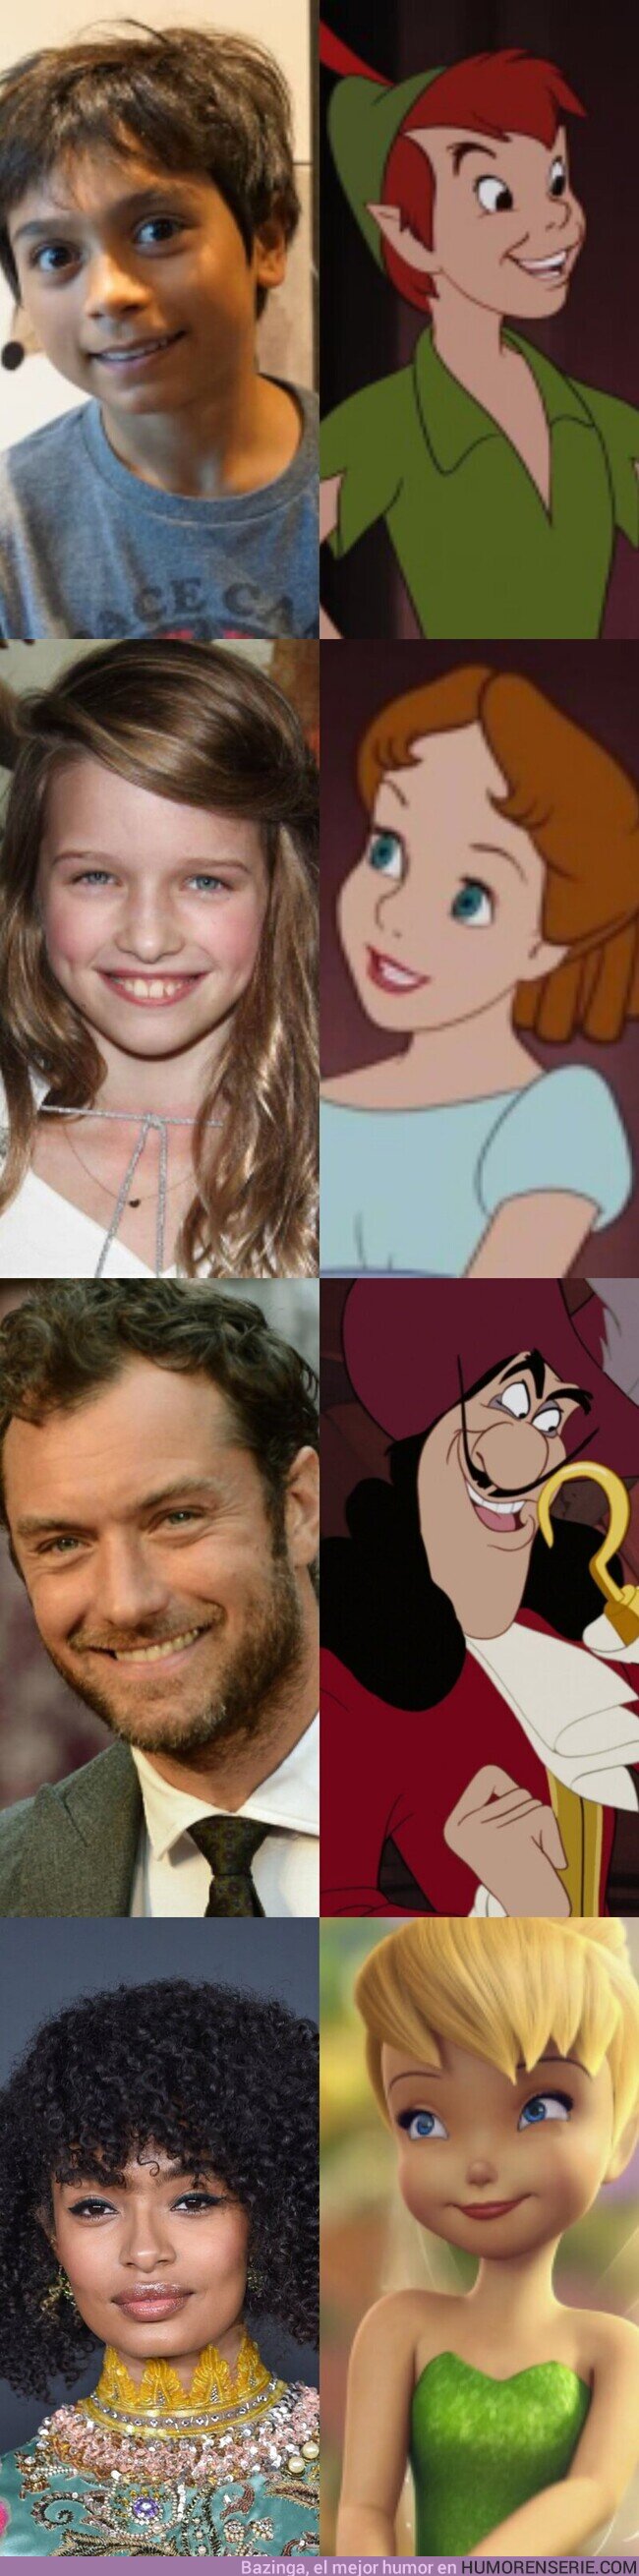 58399 - Éste es el elenco que llevamos por ahora de 'Peter Pan y Wendy', la nueva adaptación en acción real de Disney, por @DisneyReact